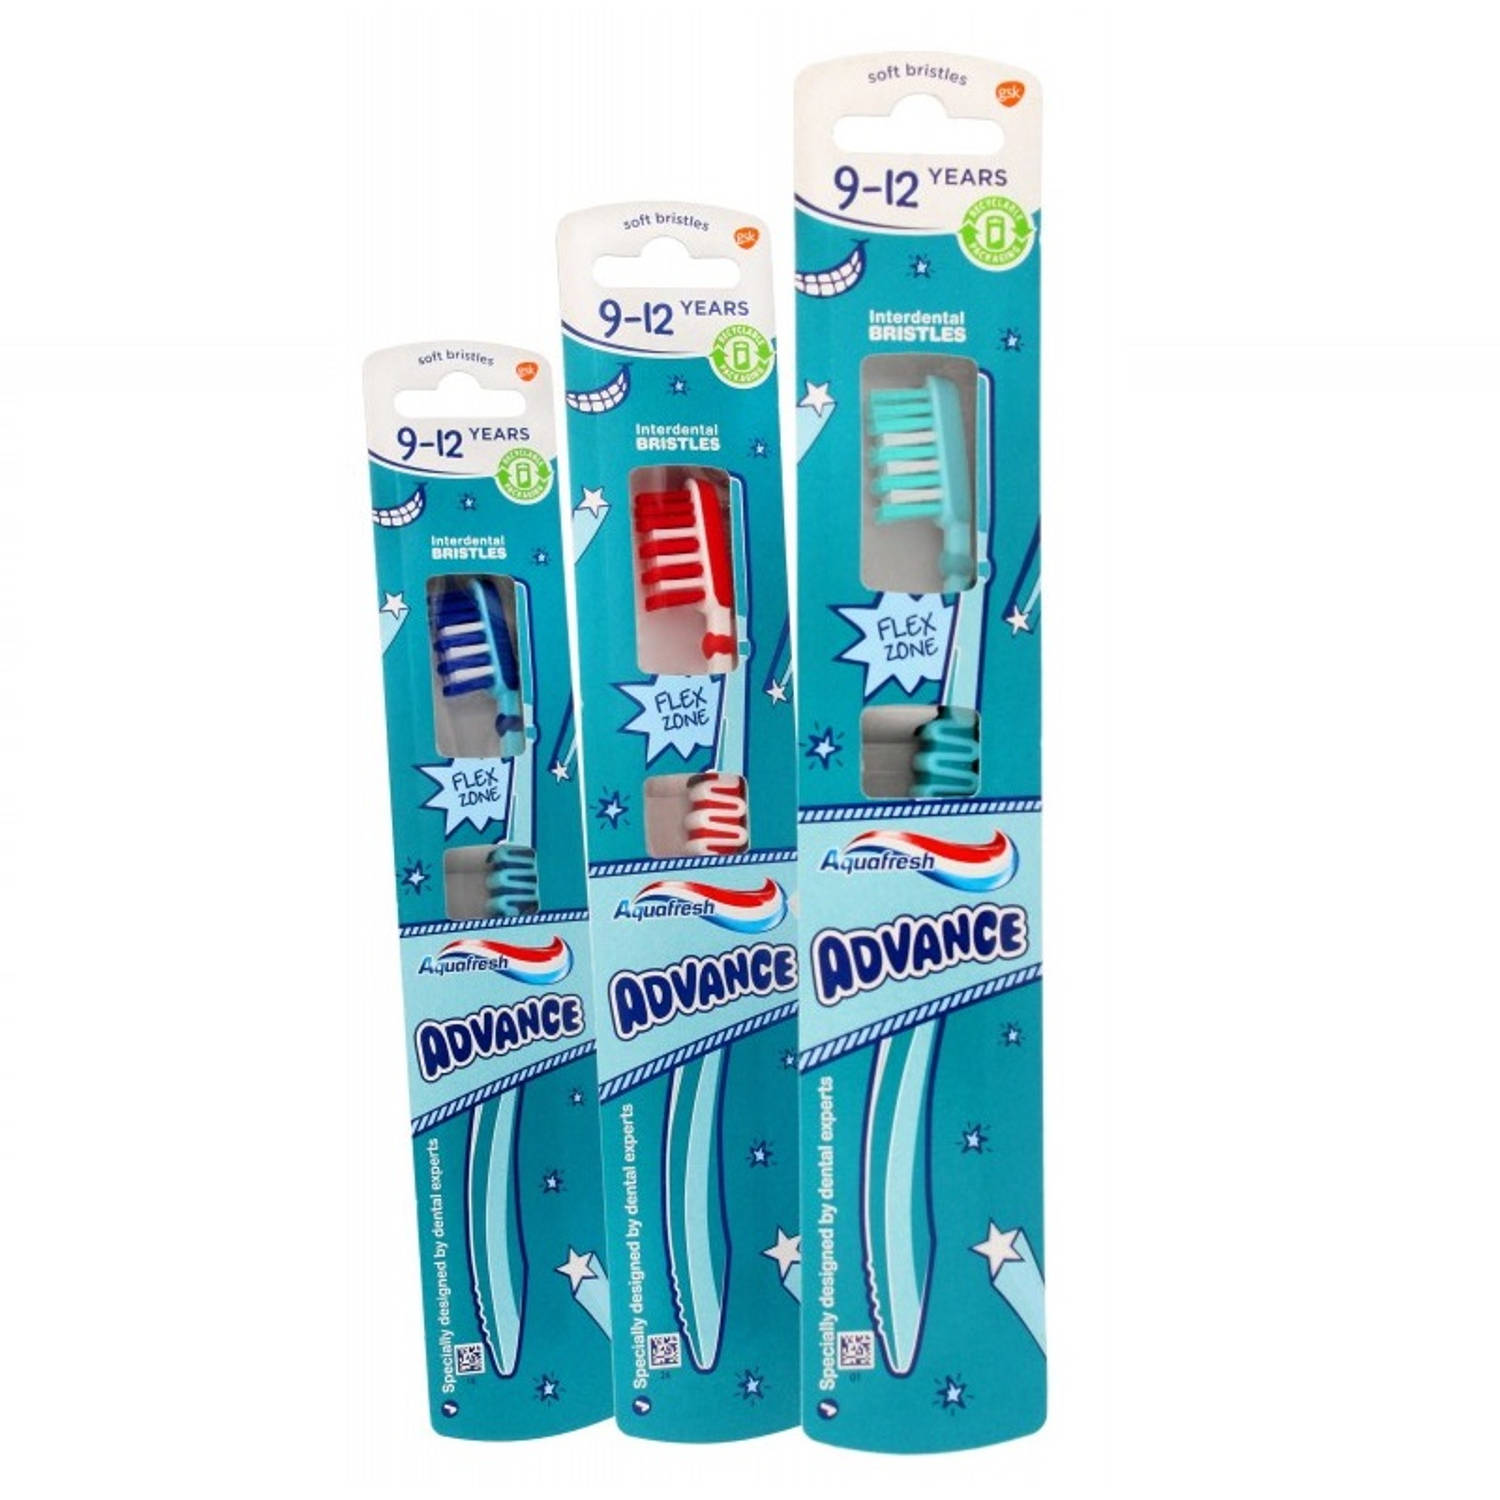 Advance tandenborstel voor kinderen van 9-12 jaar 1 stuk.